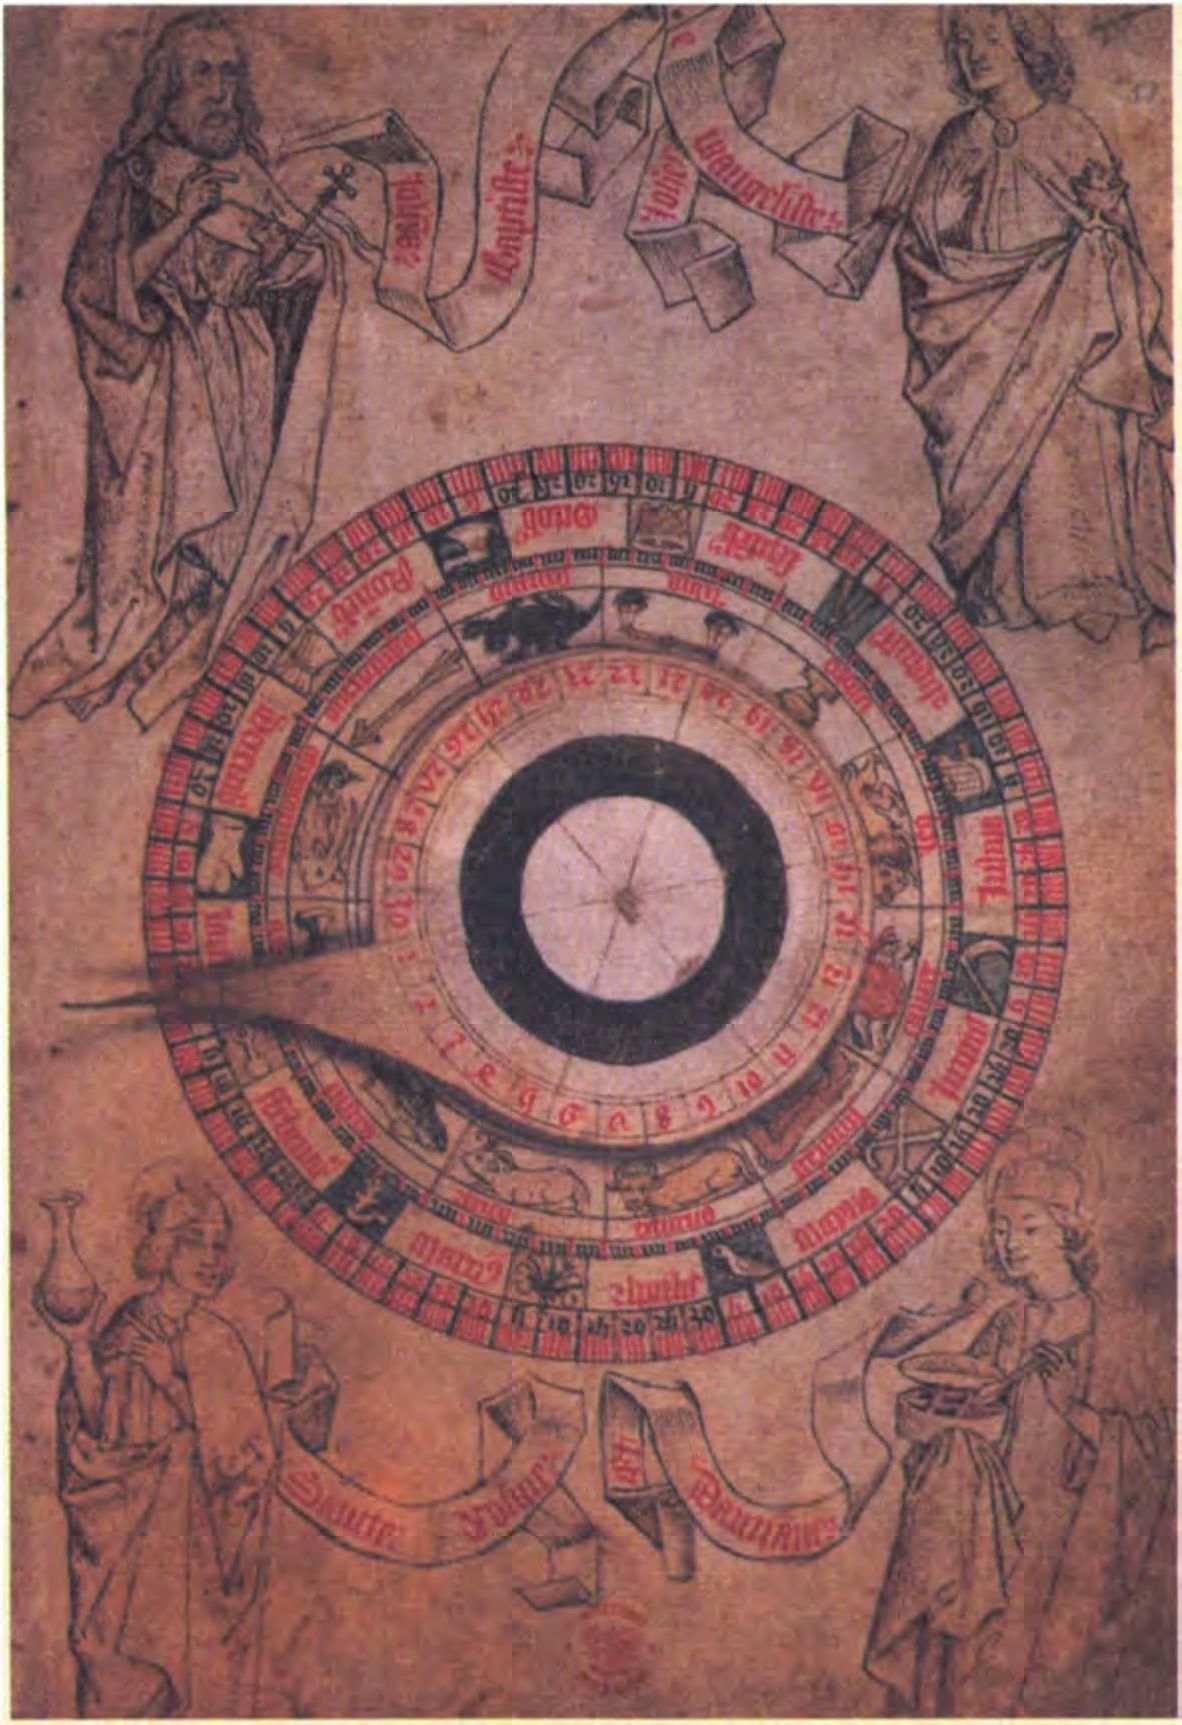 Астрологическая медицина. Передвижной гороскоп-циферблат для определения положения Солнца. (Британская Библиотека)